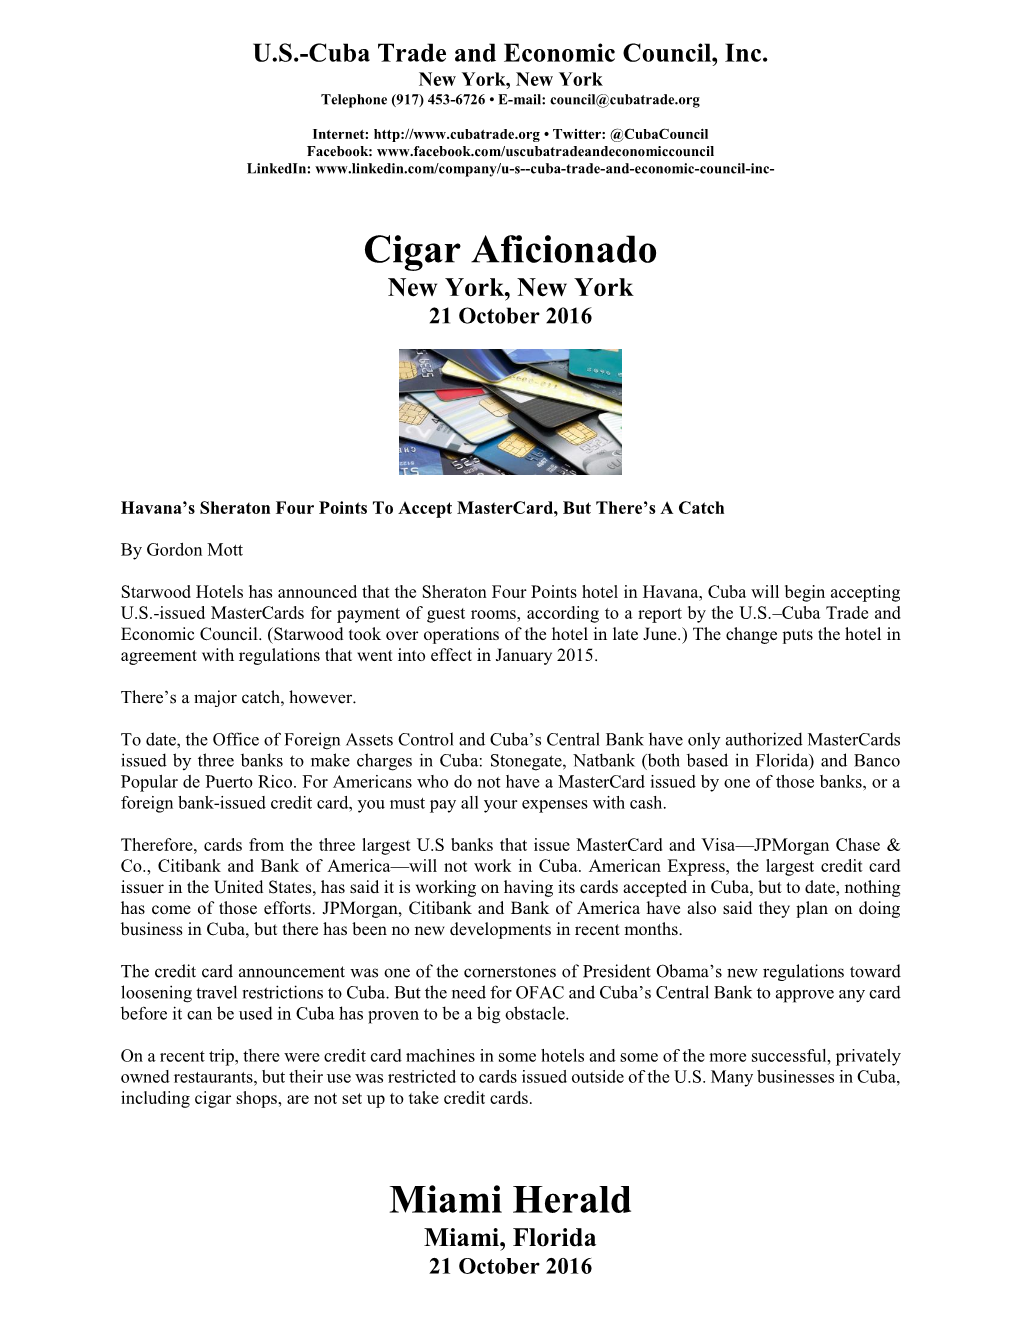 Cigar Aficionado Miami Herald